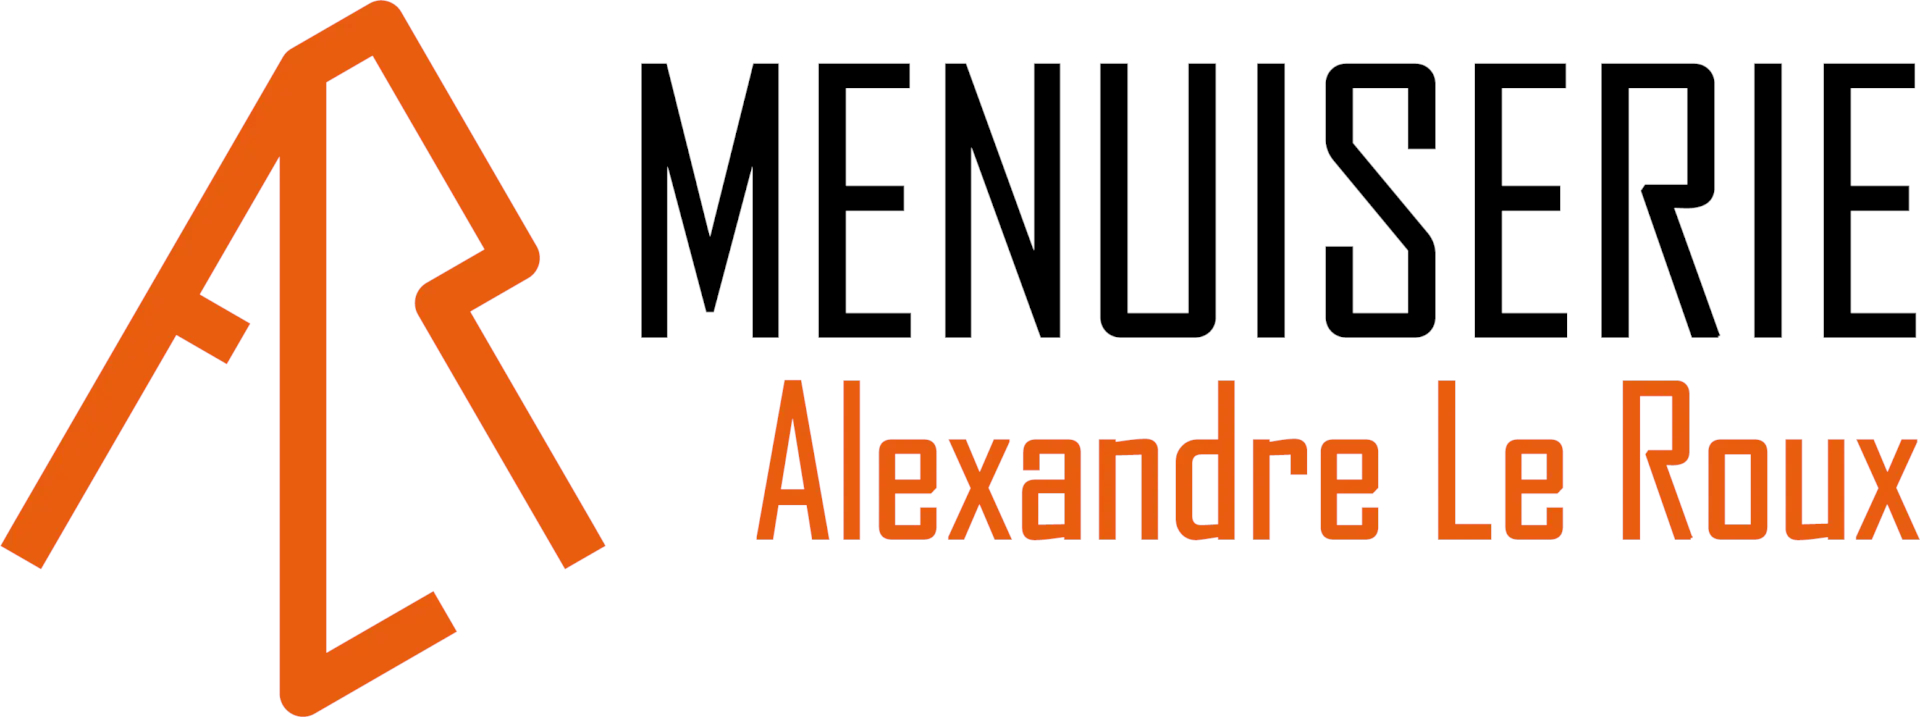 Menuiserie Alexandre Le Roux- Logo